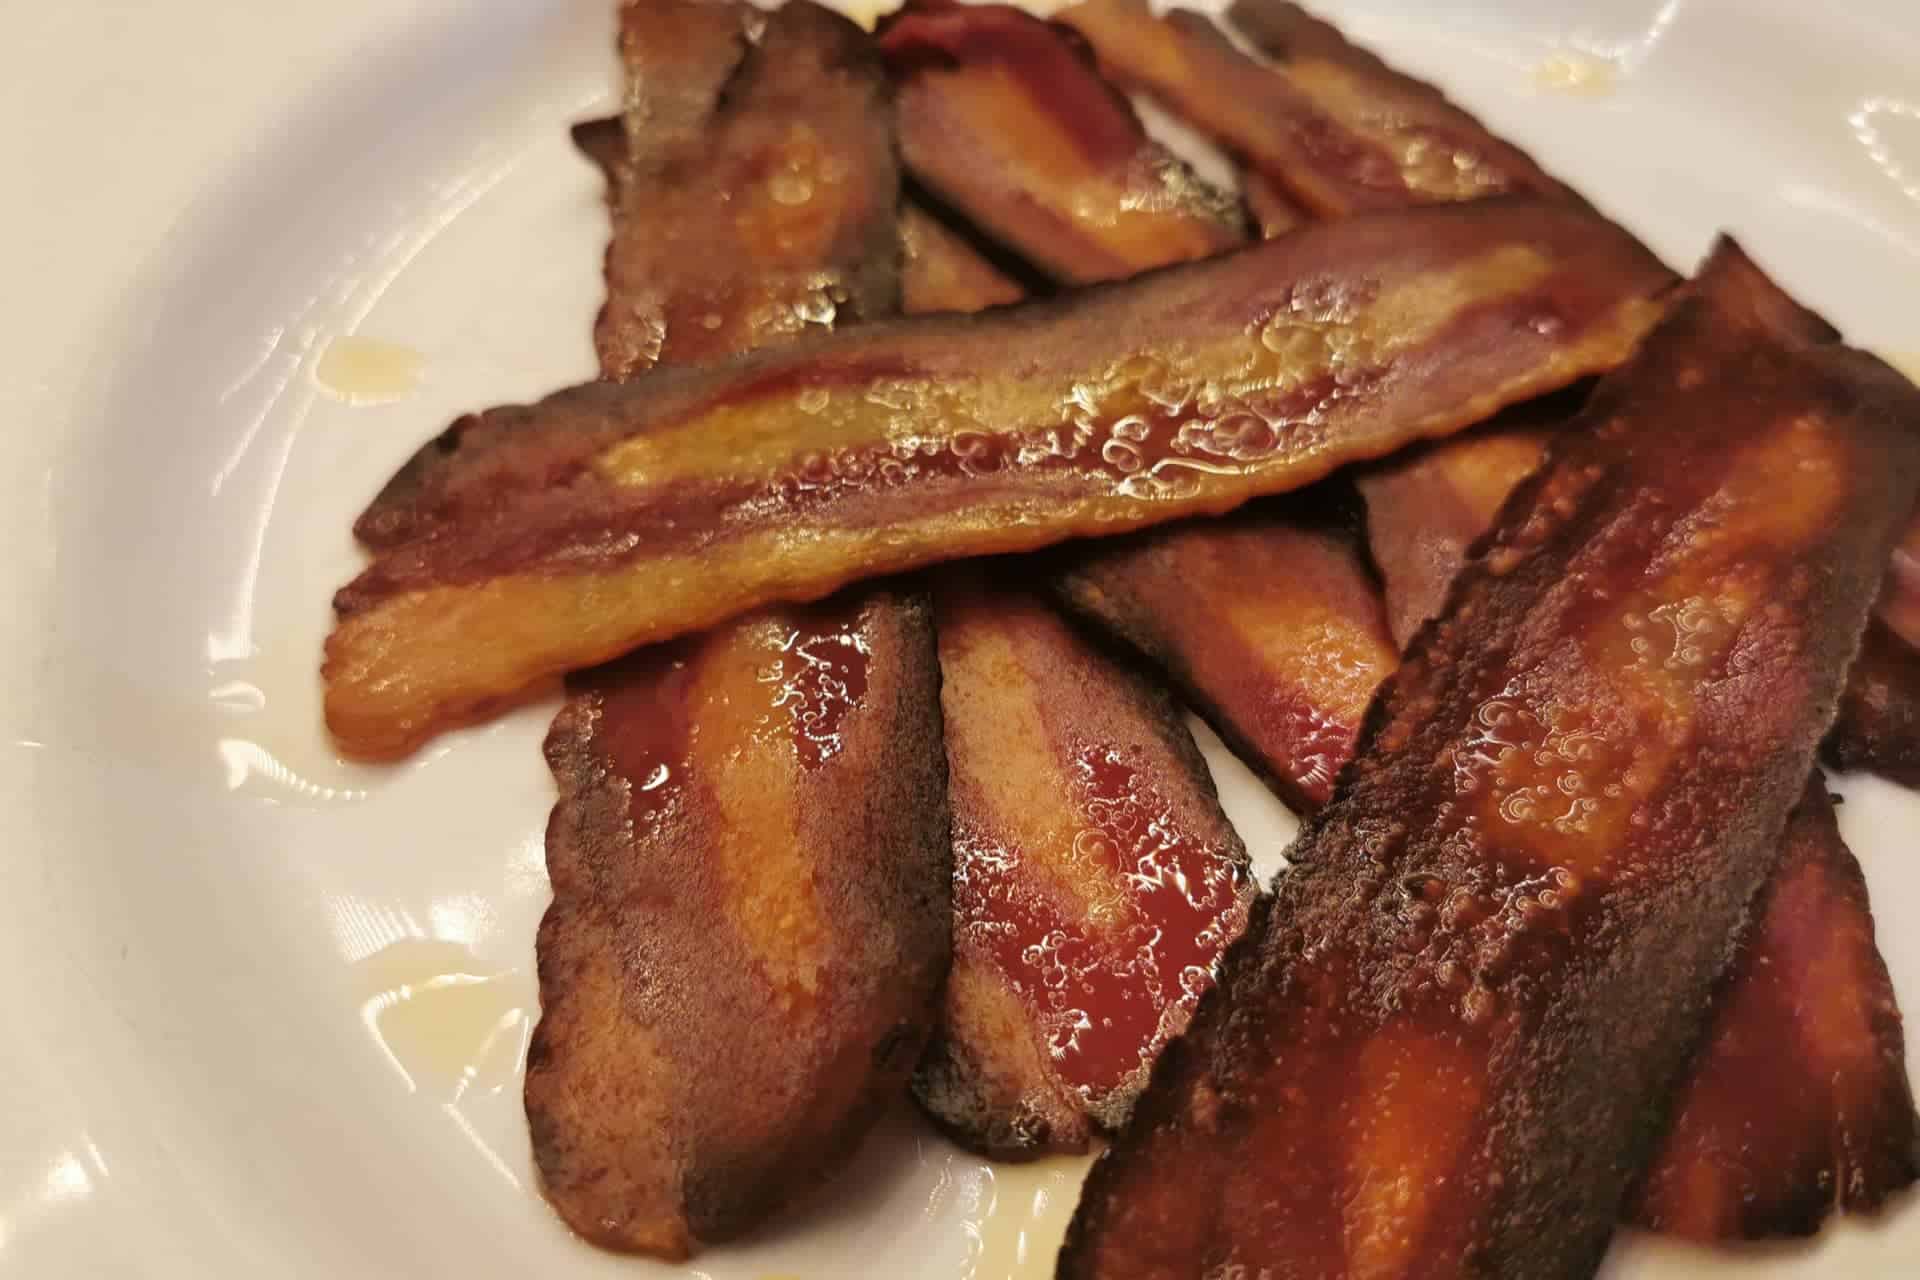 Veganer Bacon von Billie Green